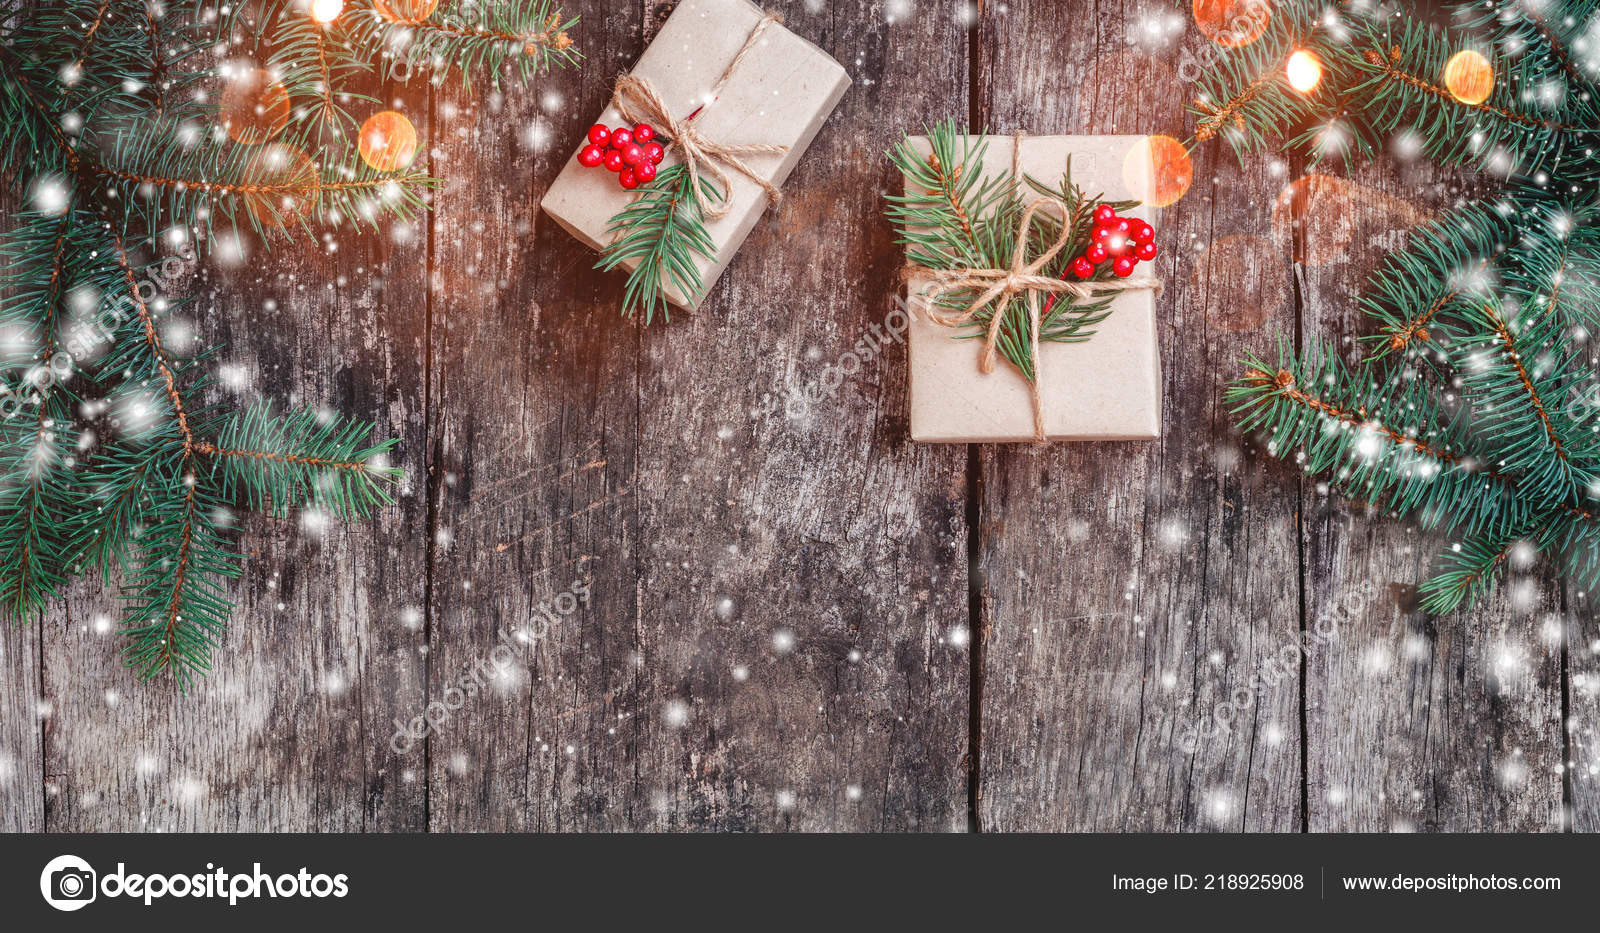 Weihnachten Hintergrund Mit Weihnachtsgeschenk Auf Holzgrund Mit Tannenzweigen Weihnachten Und Stockfotografie Lizenzfreie Fotos C Valentinjukov Depositphotos